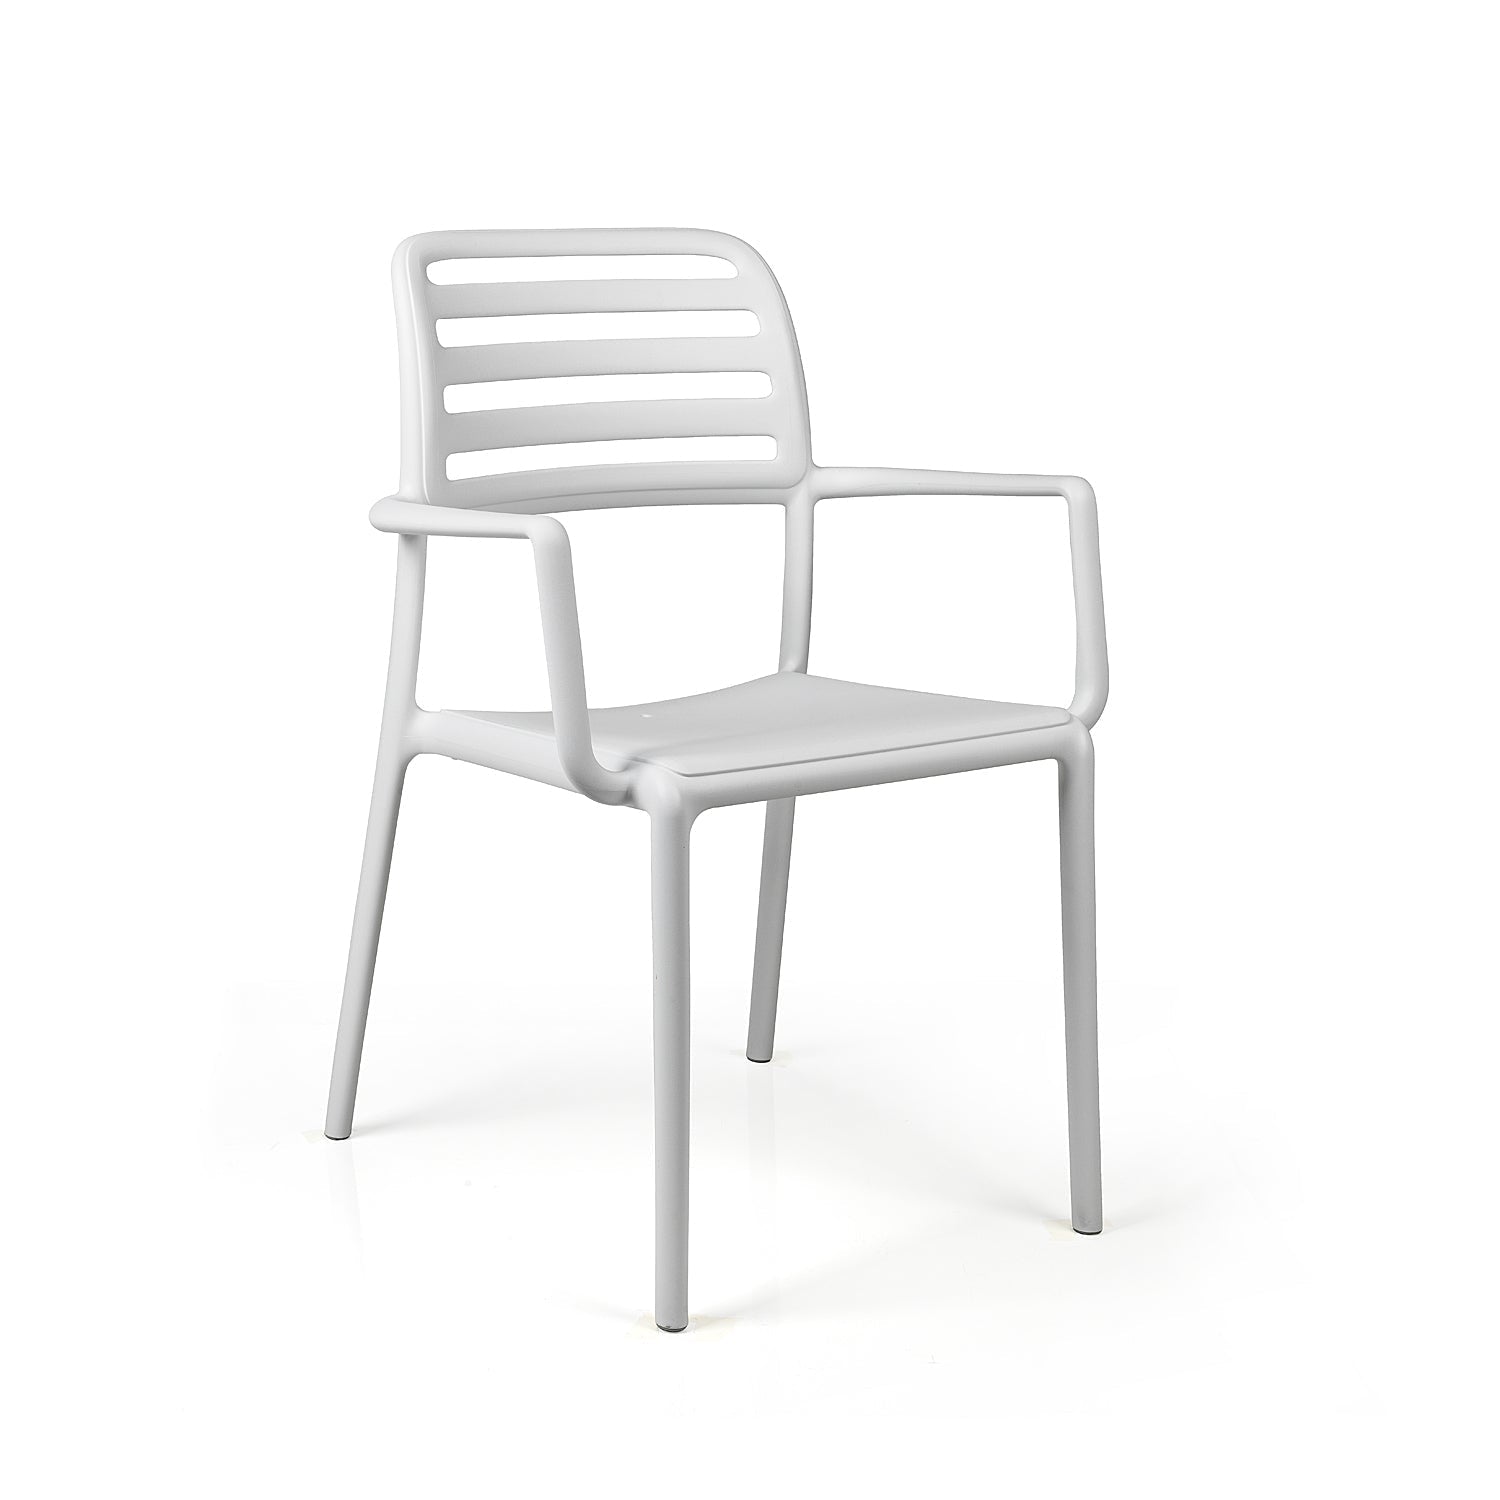 Costa Garden Chair By Nardi - White